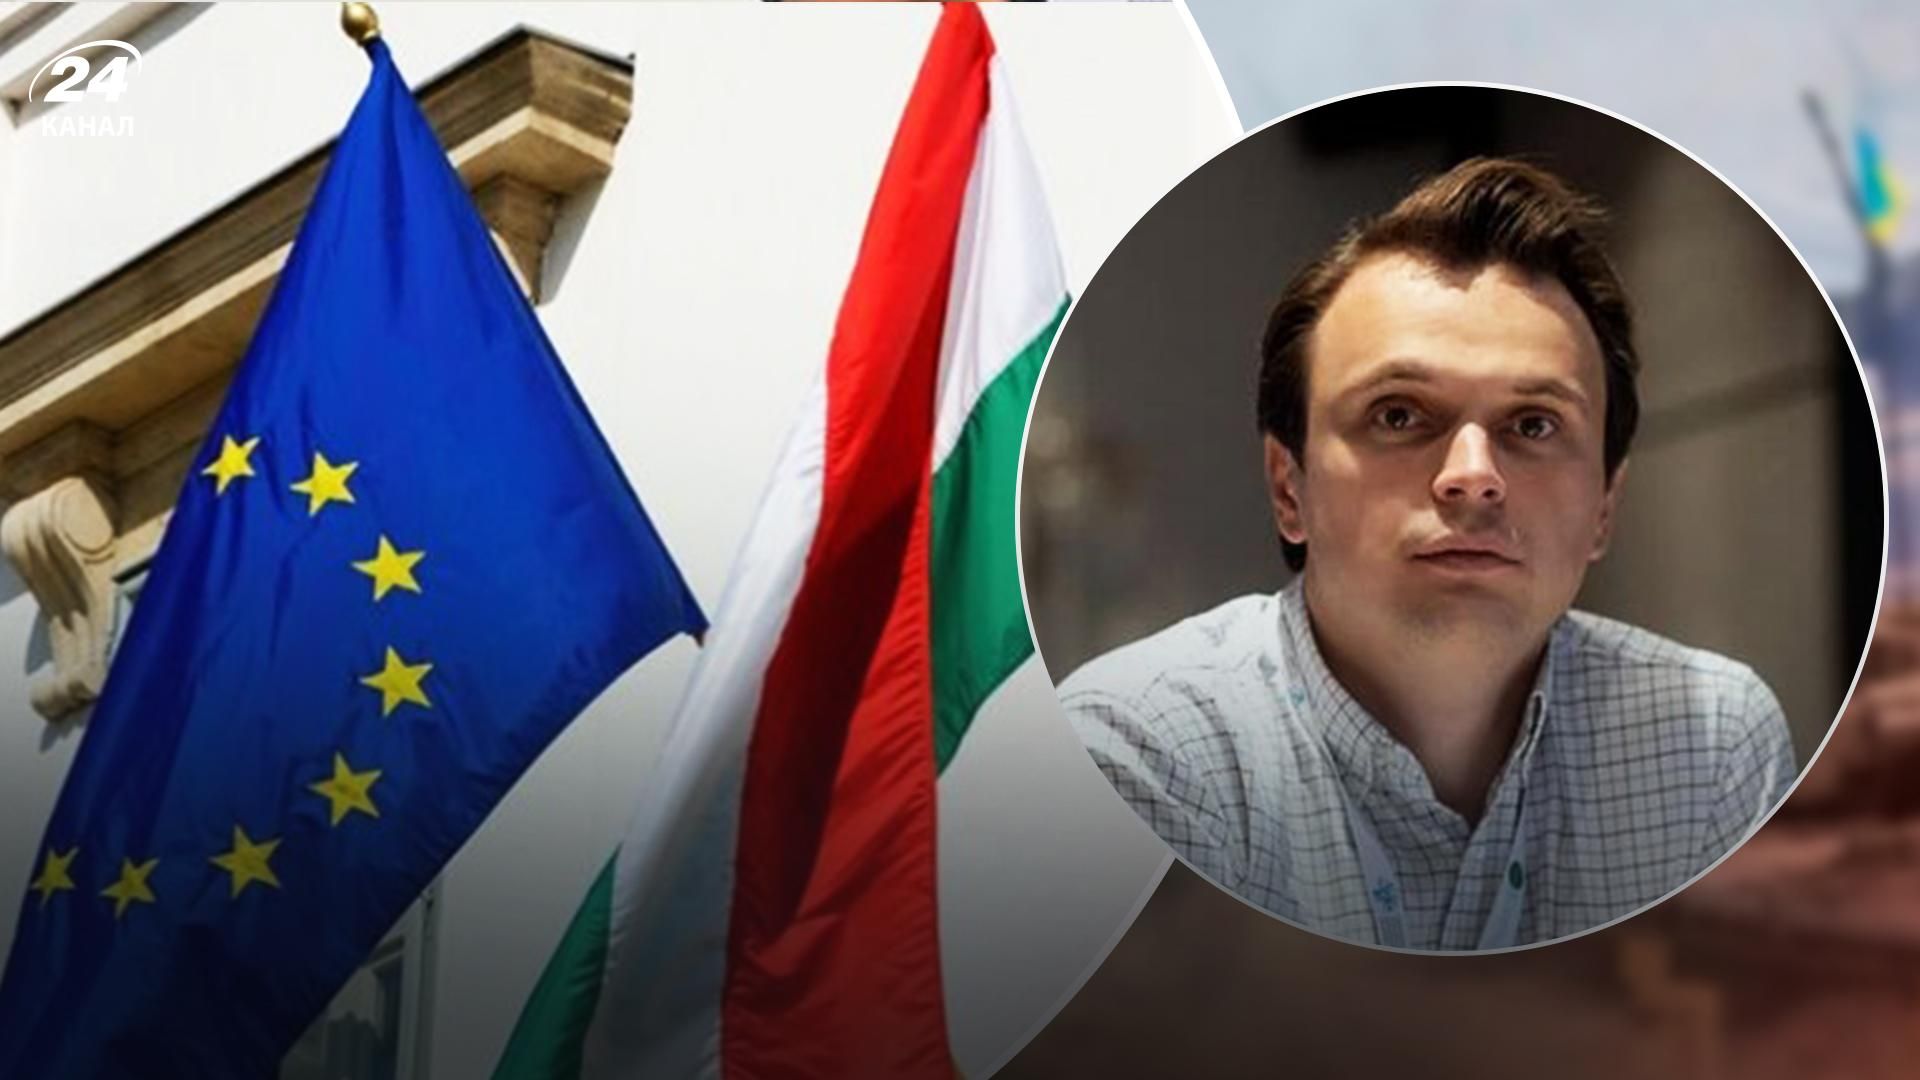 Венгрия занимает место Украины в Евросоюзе, – политолог Давидюк